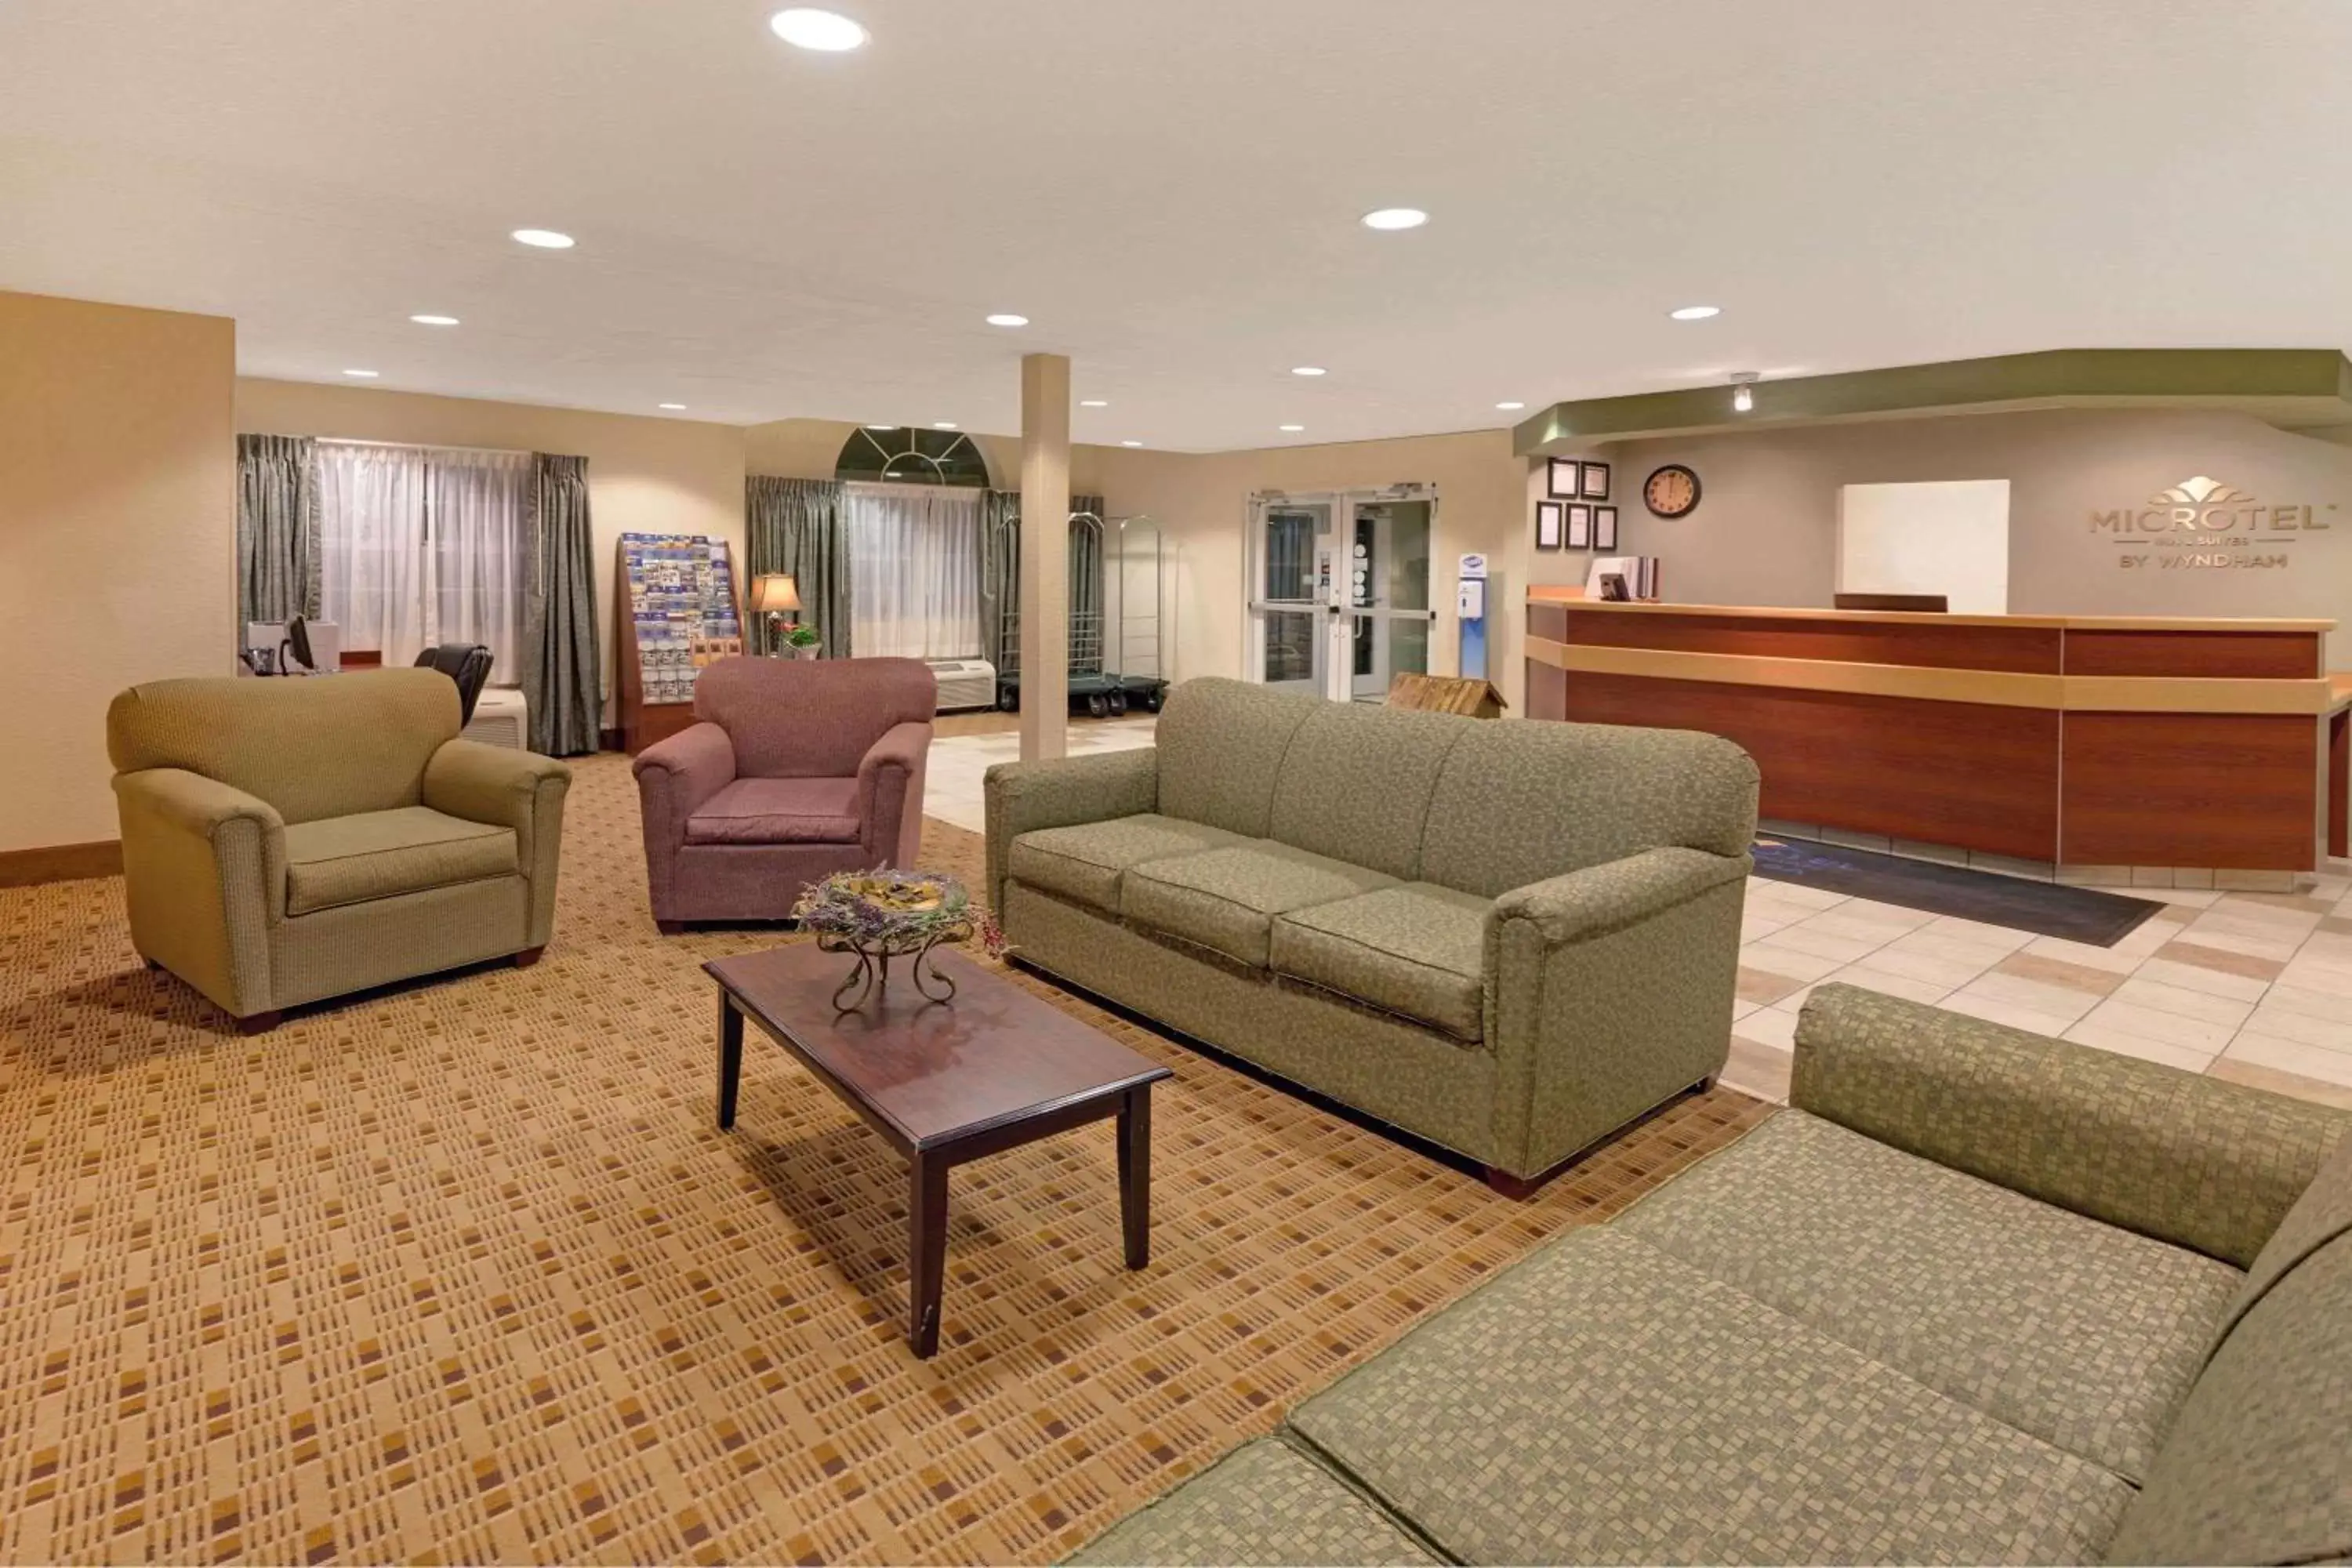 Lobby or reception, Lobby/Reception in Microtel Inn & Suites by Wyndham Jasper